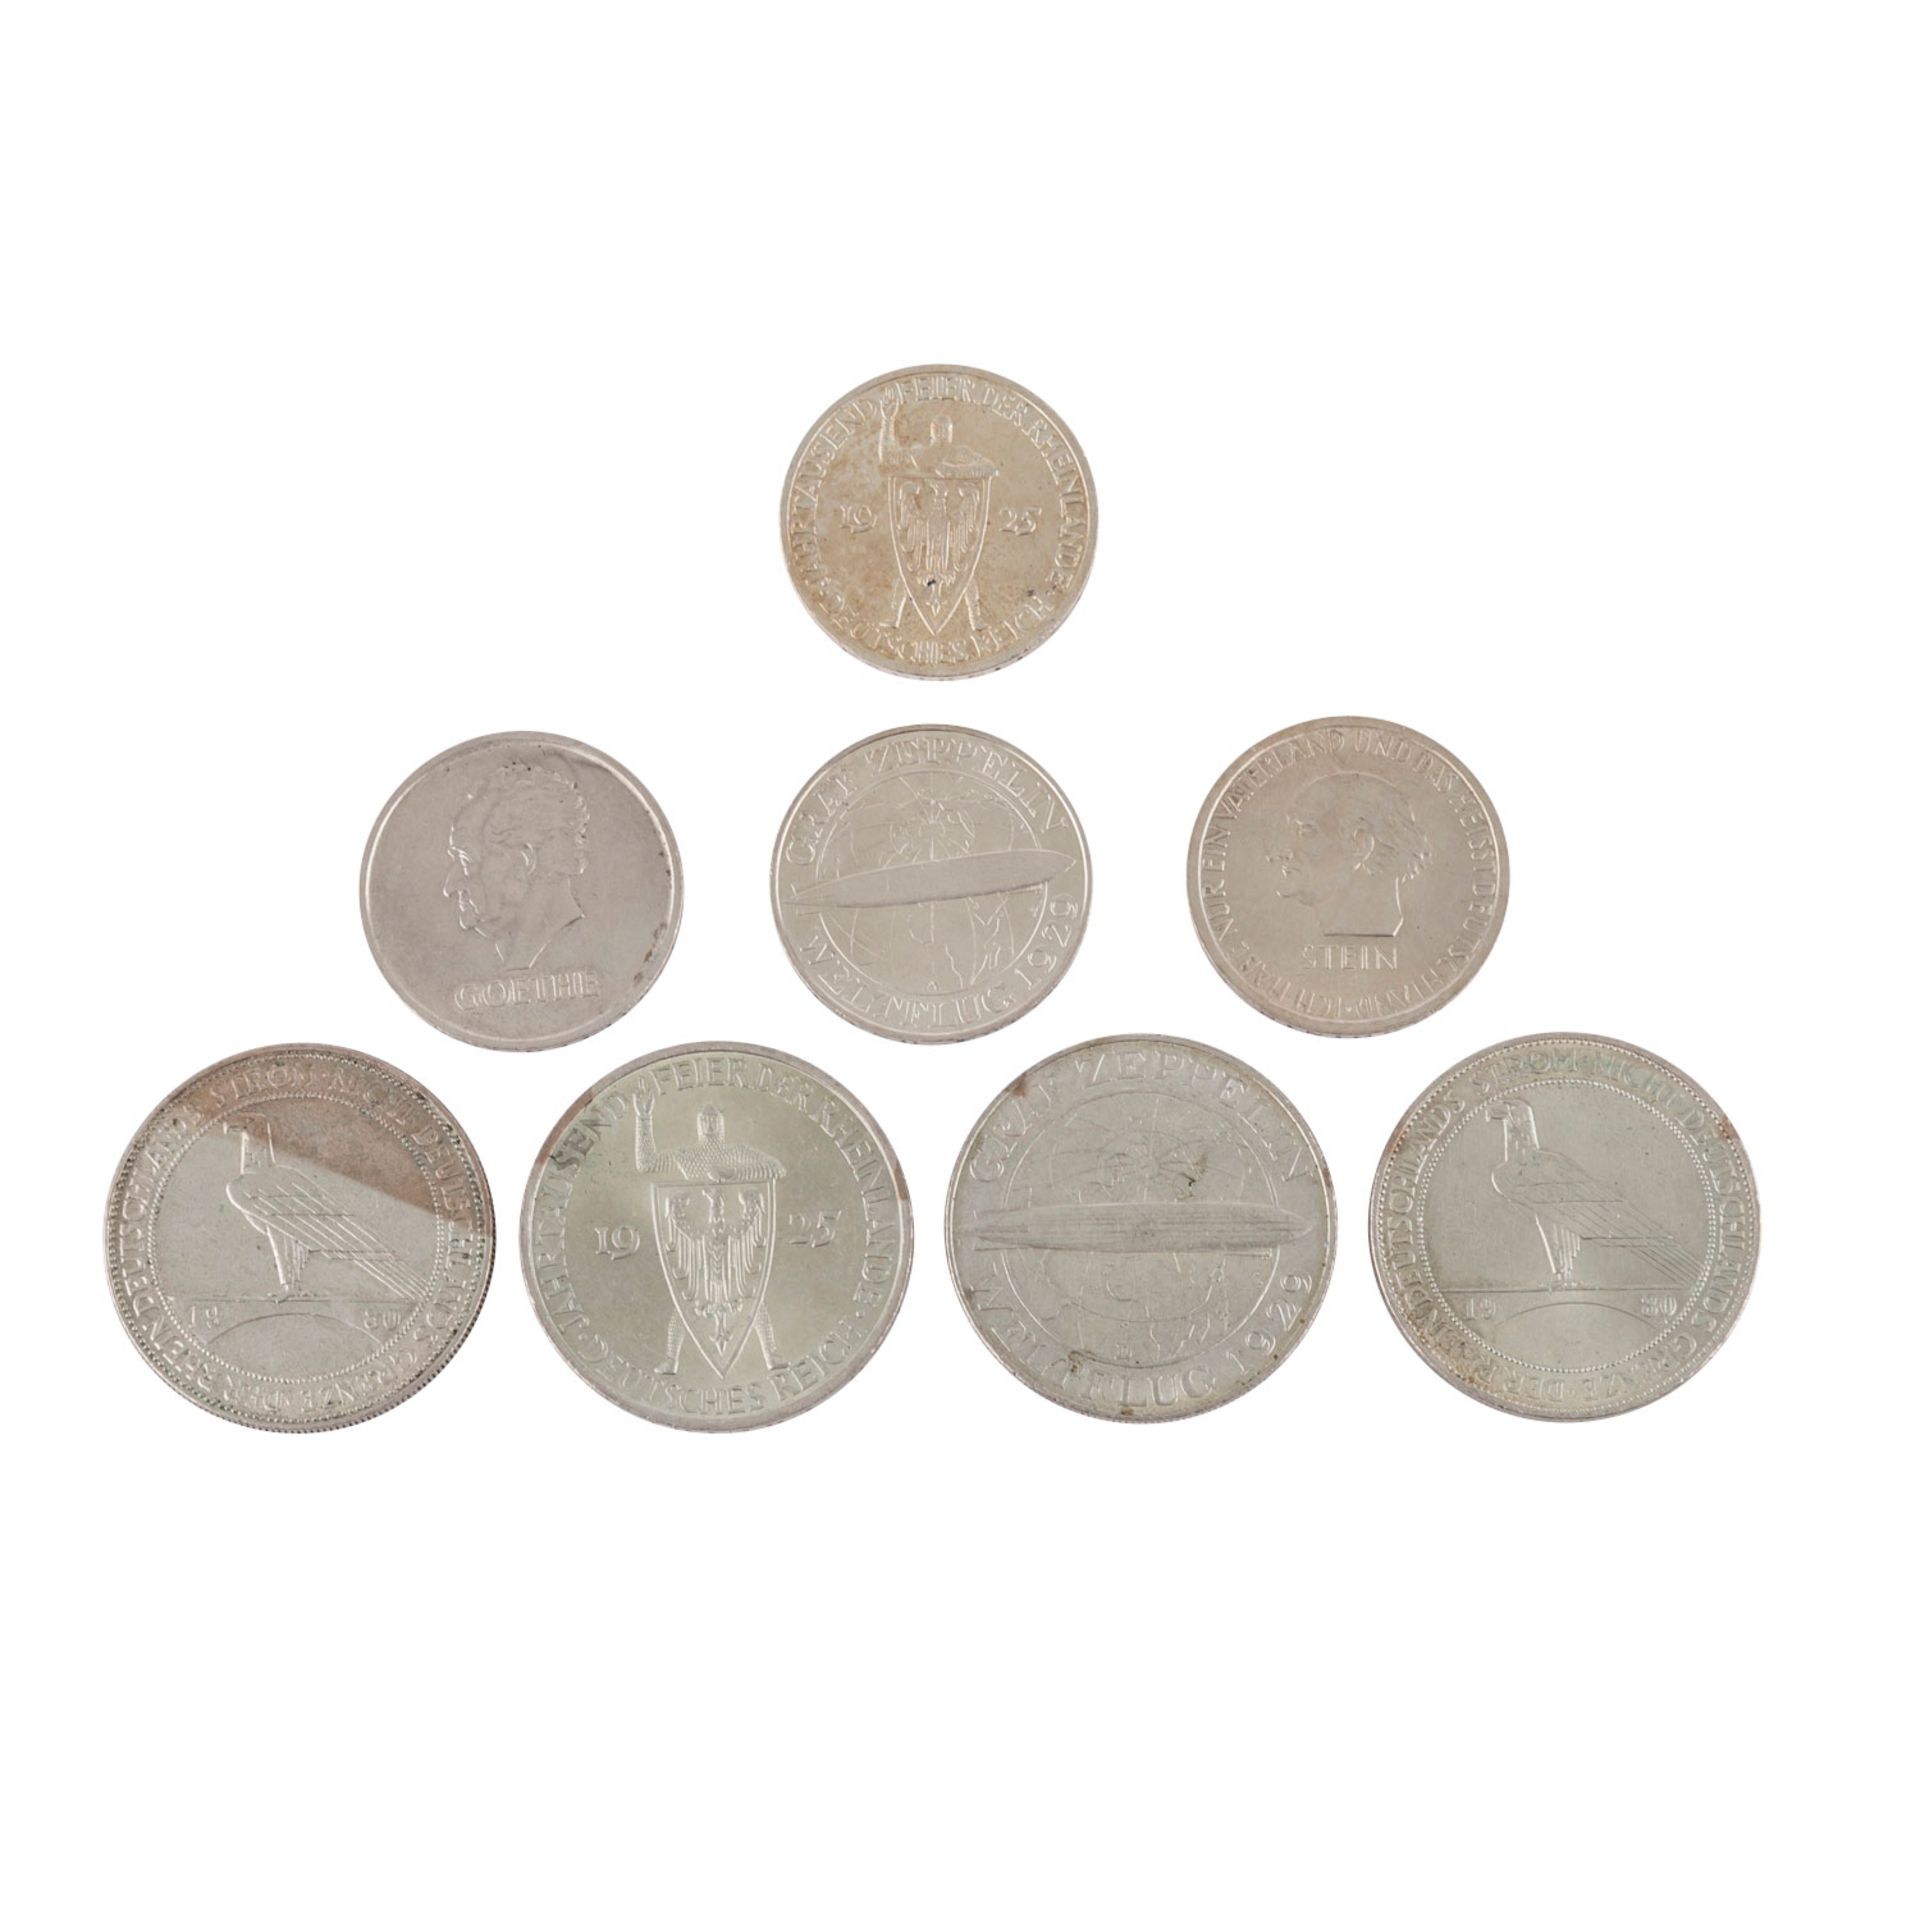 Weimarer Republik - Lot aus 8 Münzen wie folgt3 Reichsmark 1925 G und 5 Reichsmark 1925 A